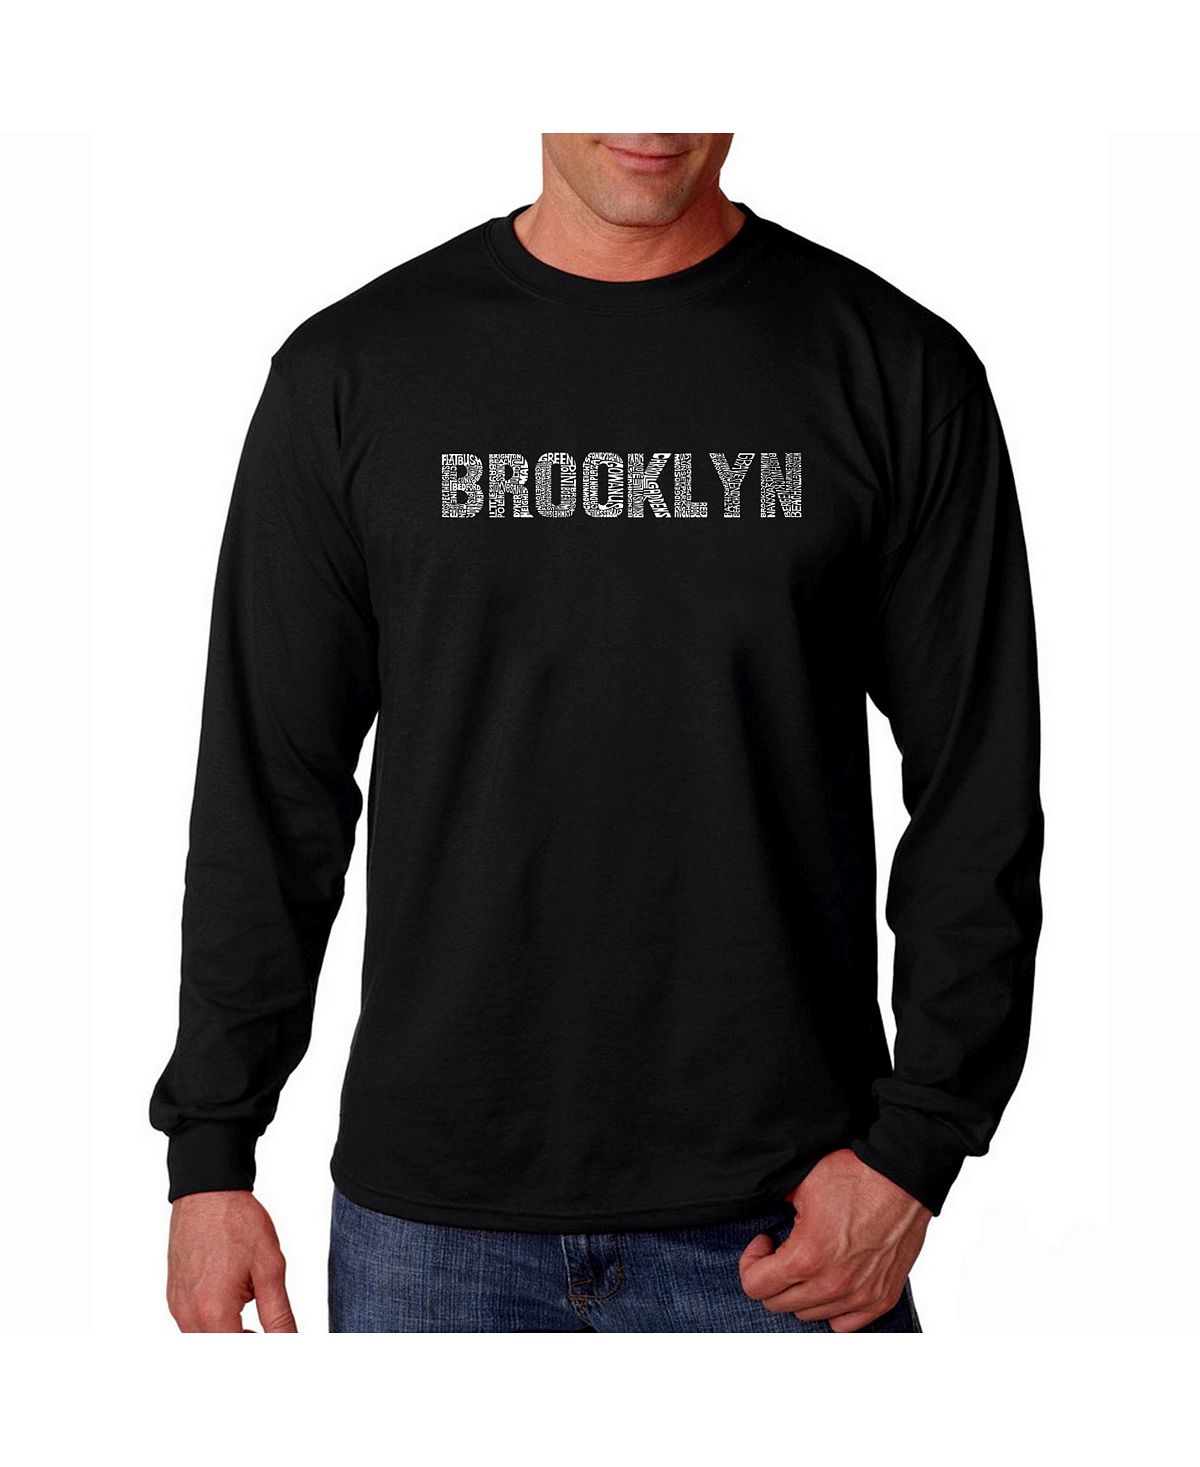 Мужская футболка с длинным рукавом word art - brooklyn neighborhoods LA Pop Art, черный brooklyn neighborhoods мужская футболка с длинным рукавом с надписью word art la pop art